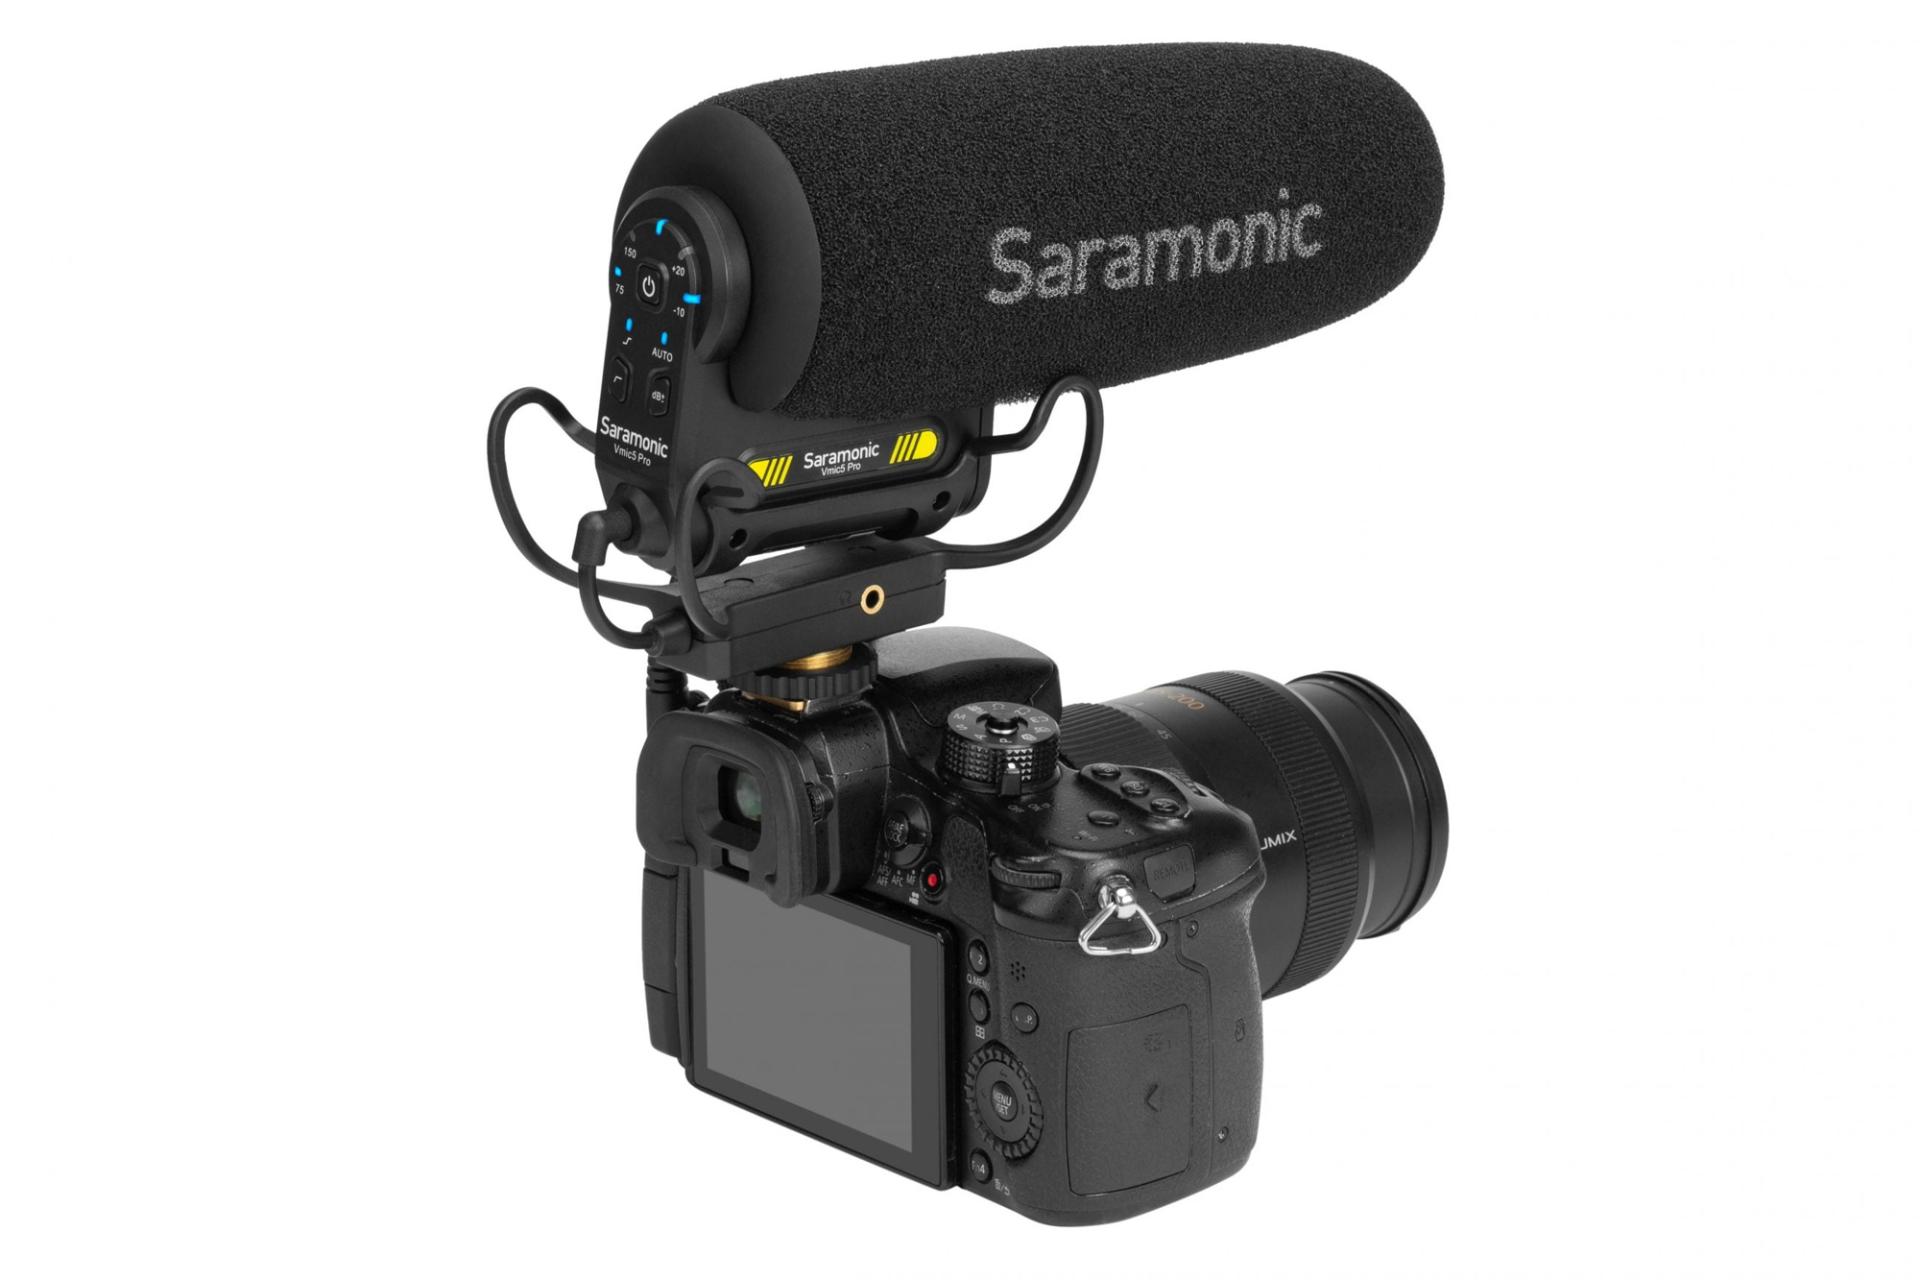 طراحی میکروفون سارامونیک Saramonic Vmic5 Pro